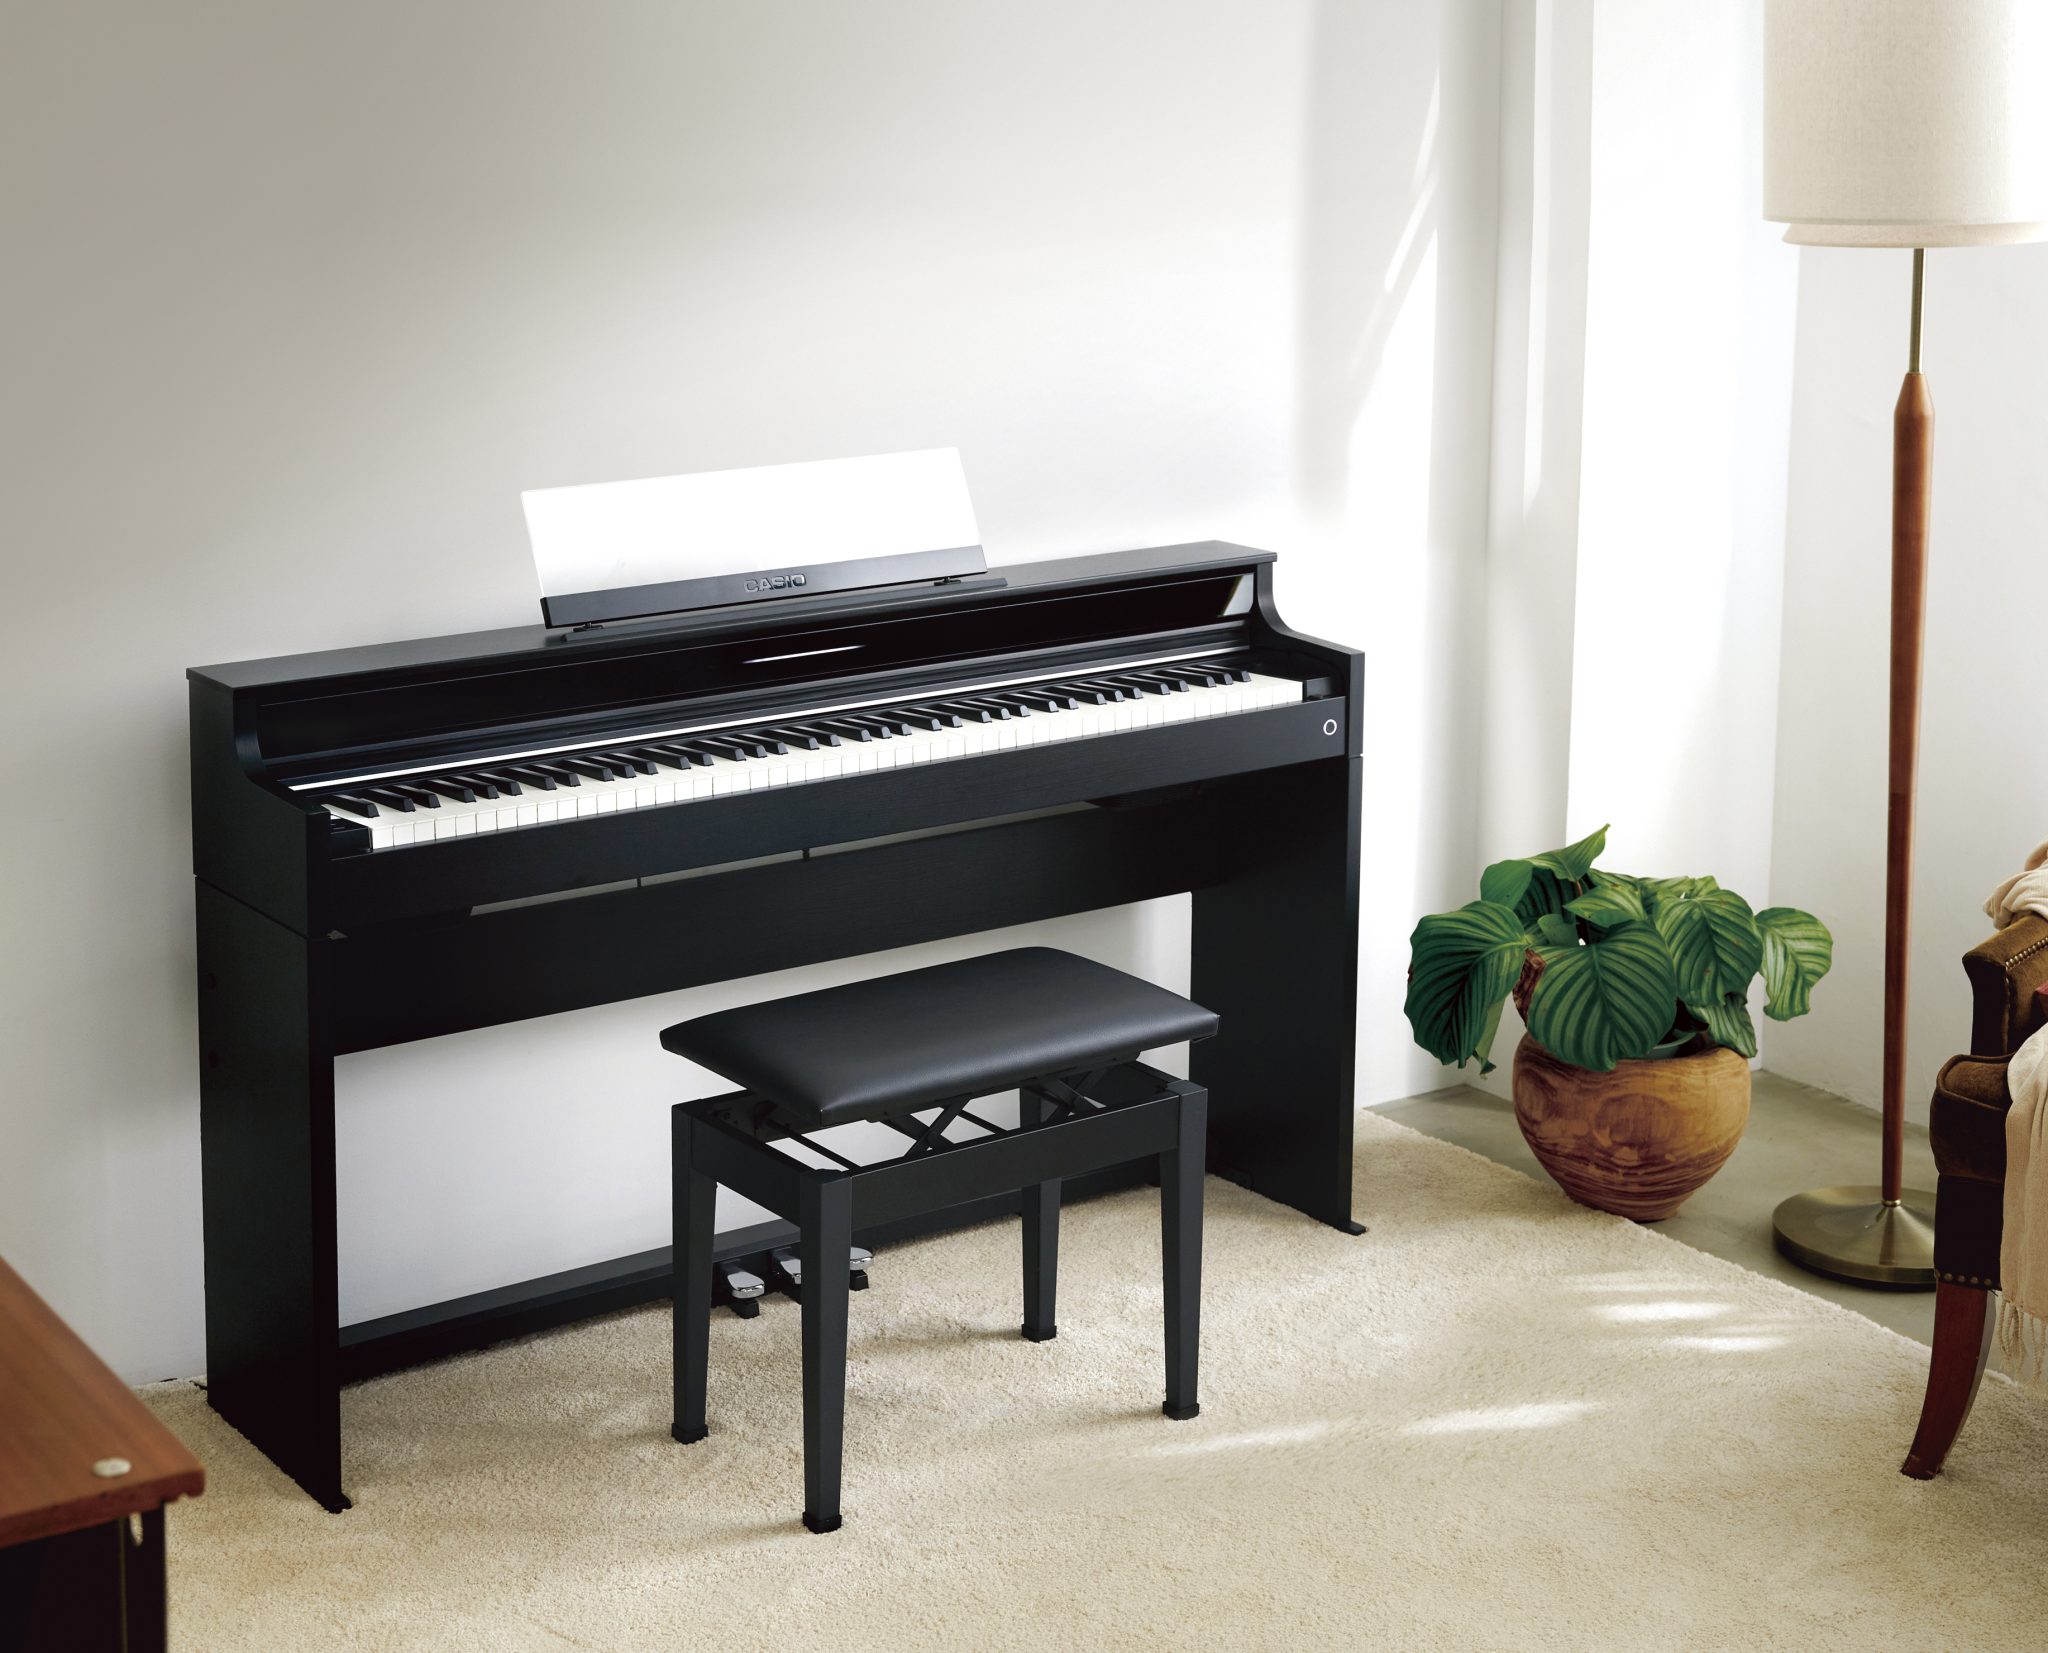 この度CASIO×島村楽器のコラボレーションモデル「AP-5000GP/S」が発売となります！！スタイリッシュ且つピアノらしさを兼ね備えたモデルとなっております。 AP-S5000GP/Sの魅力をピアノ担当者の感想も併せてご紹介いたします！ CONTENTS製品仕様AP-S5000GP/Sのすごいと […]